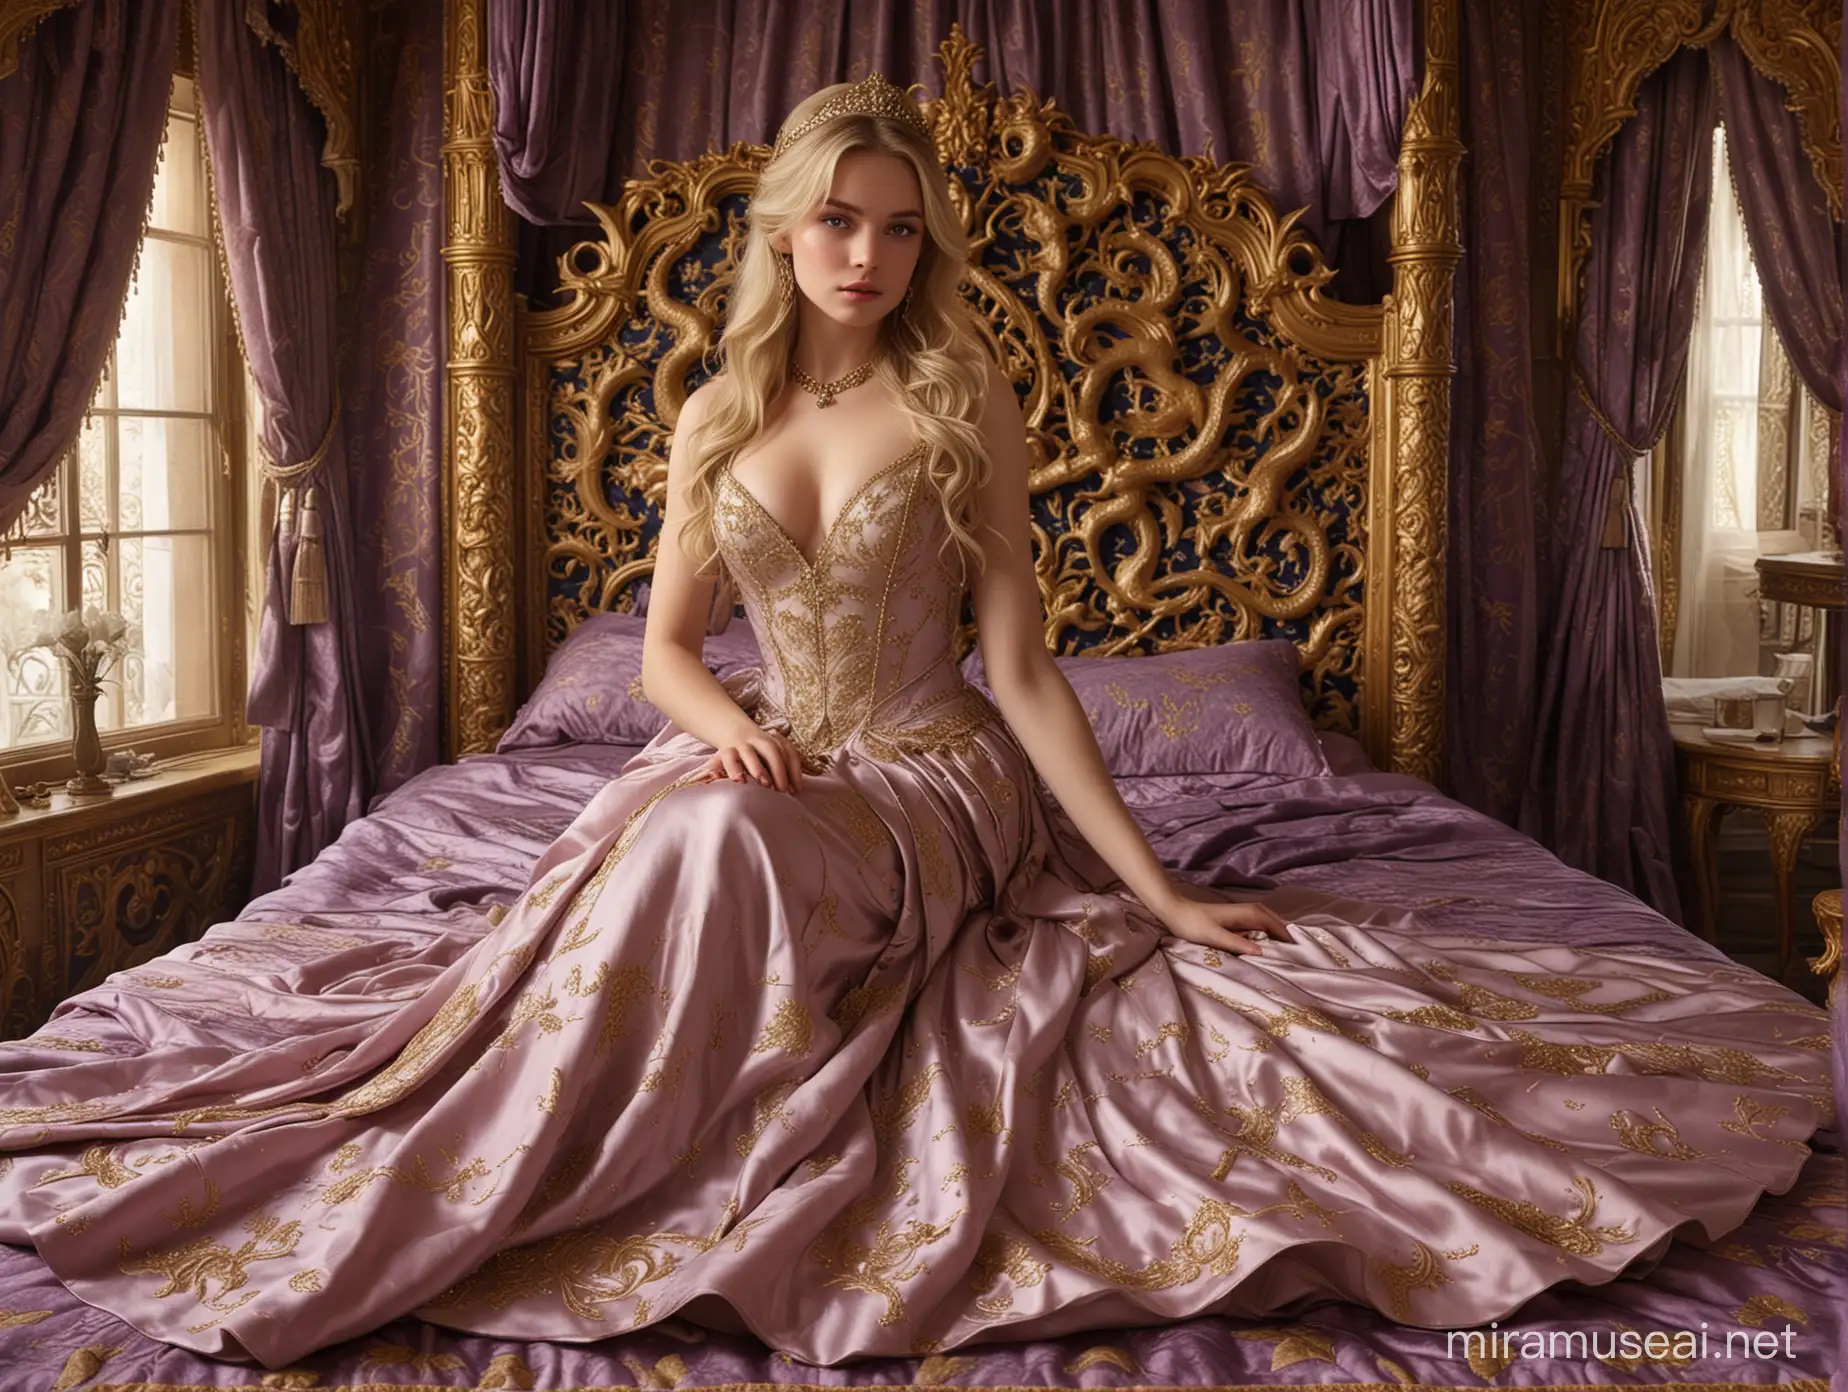 Elegant 18YearOld Princess in Opulent Royal Quarters